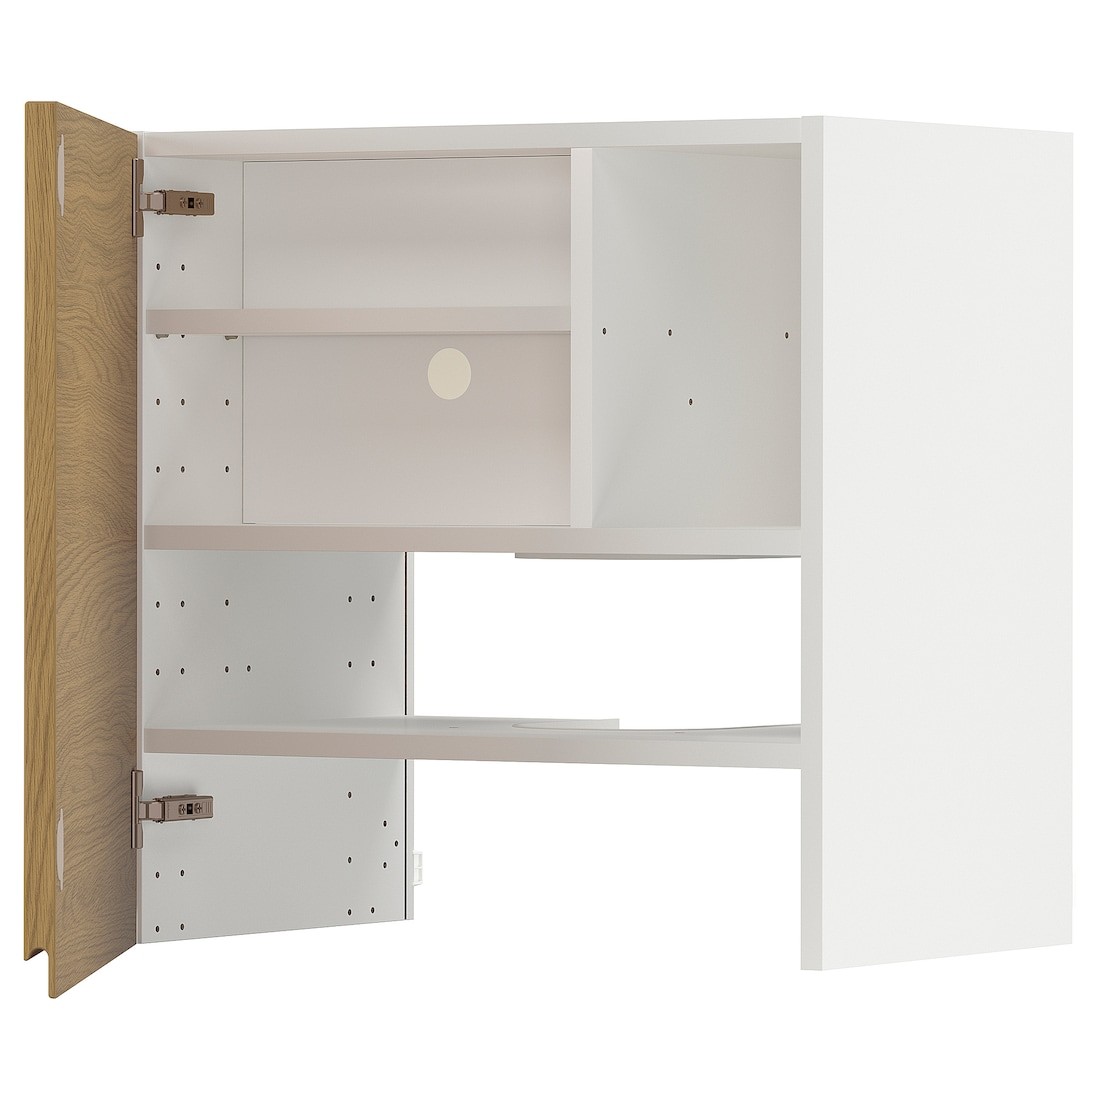 IKEA METOD навесной шкаф д/вытяжки/полка/дверь, белый / Voxtorp имитация дуб, 60x60 см 69539069 695.390.69